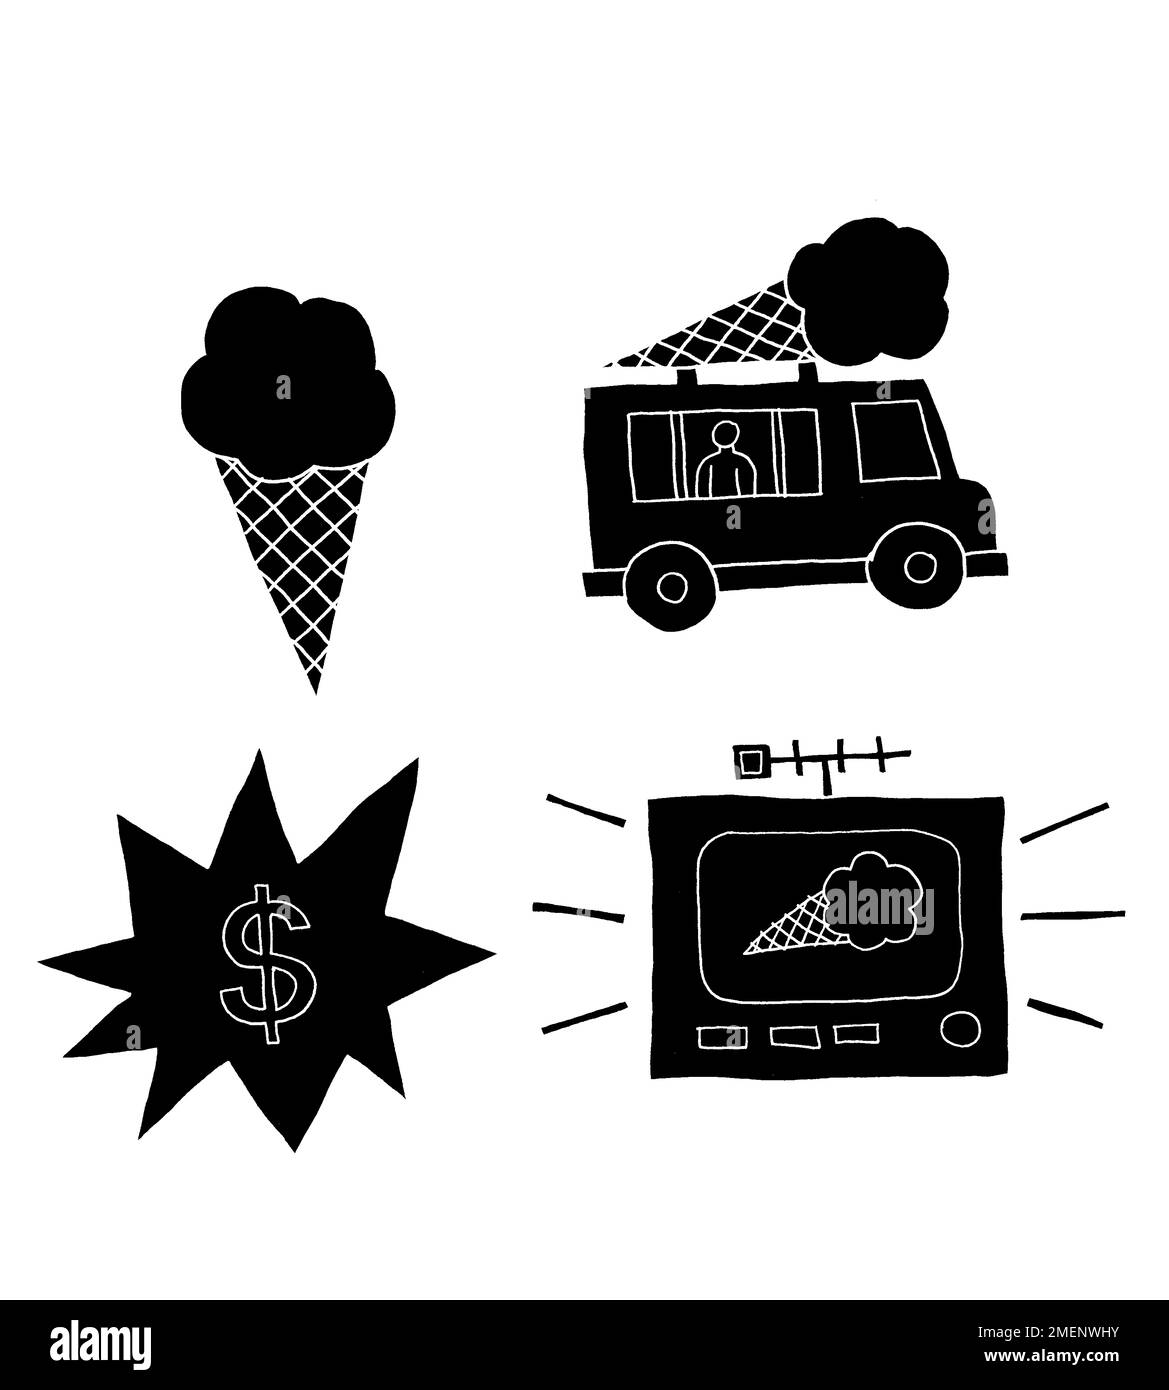 Immagine in bianco e nero di gelato, furgone gelato, prezzi e pubblicità di gelato, che rappresentano il prodotto, il luogo, il prezzo e la promozione Foto Stock